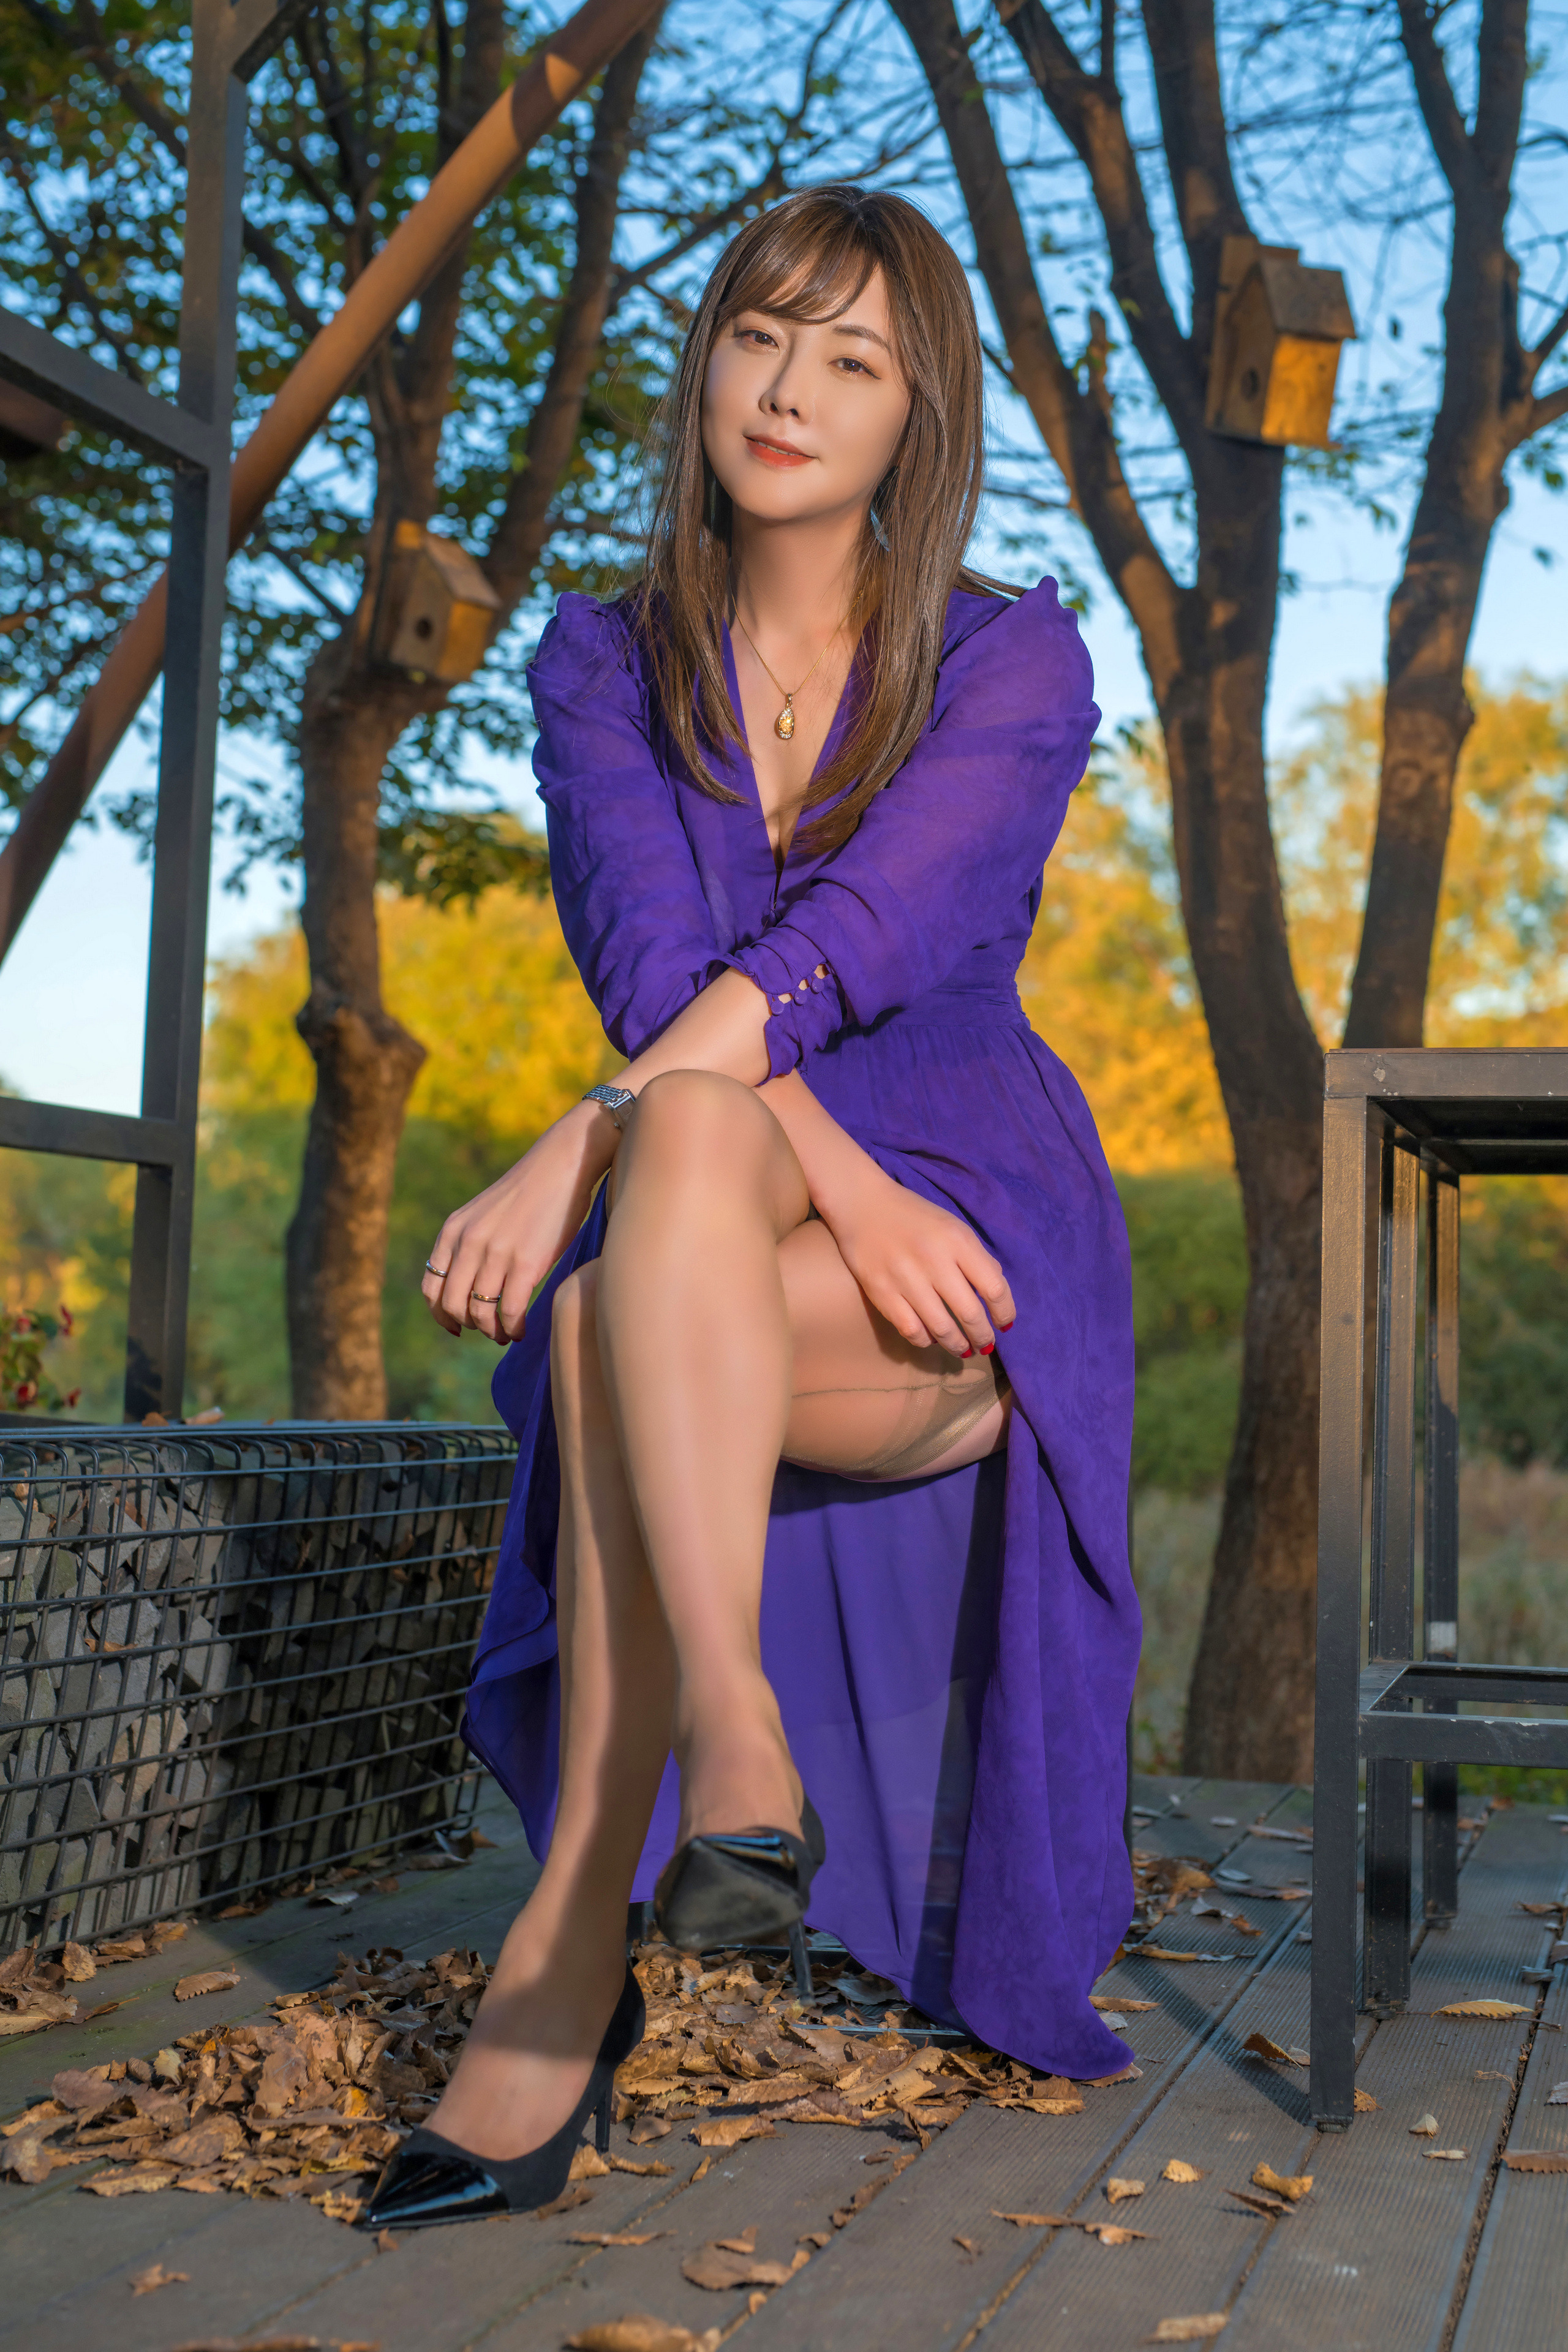 Asian Model Women Long Hair Brunette Sitting Purple Dress Trees Black High Heels Depth Of Field Tabl 2560x3840